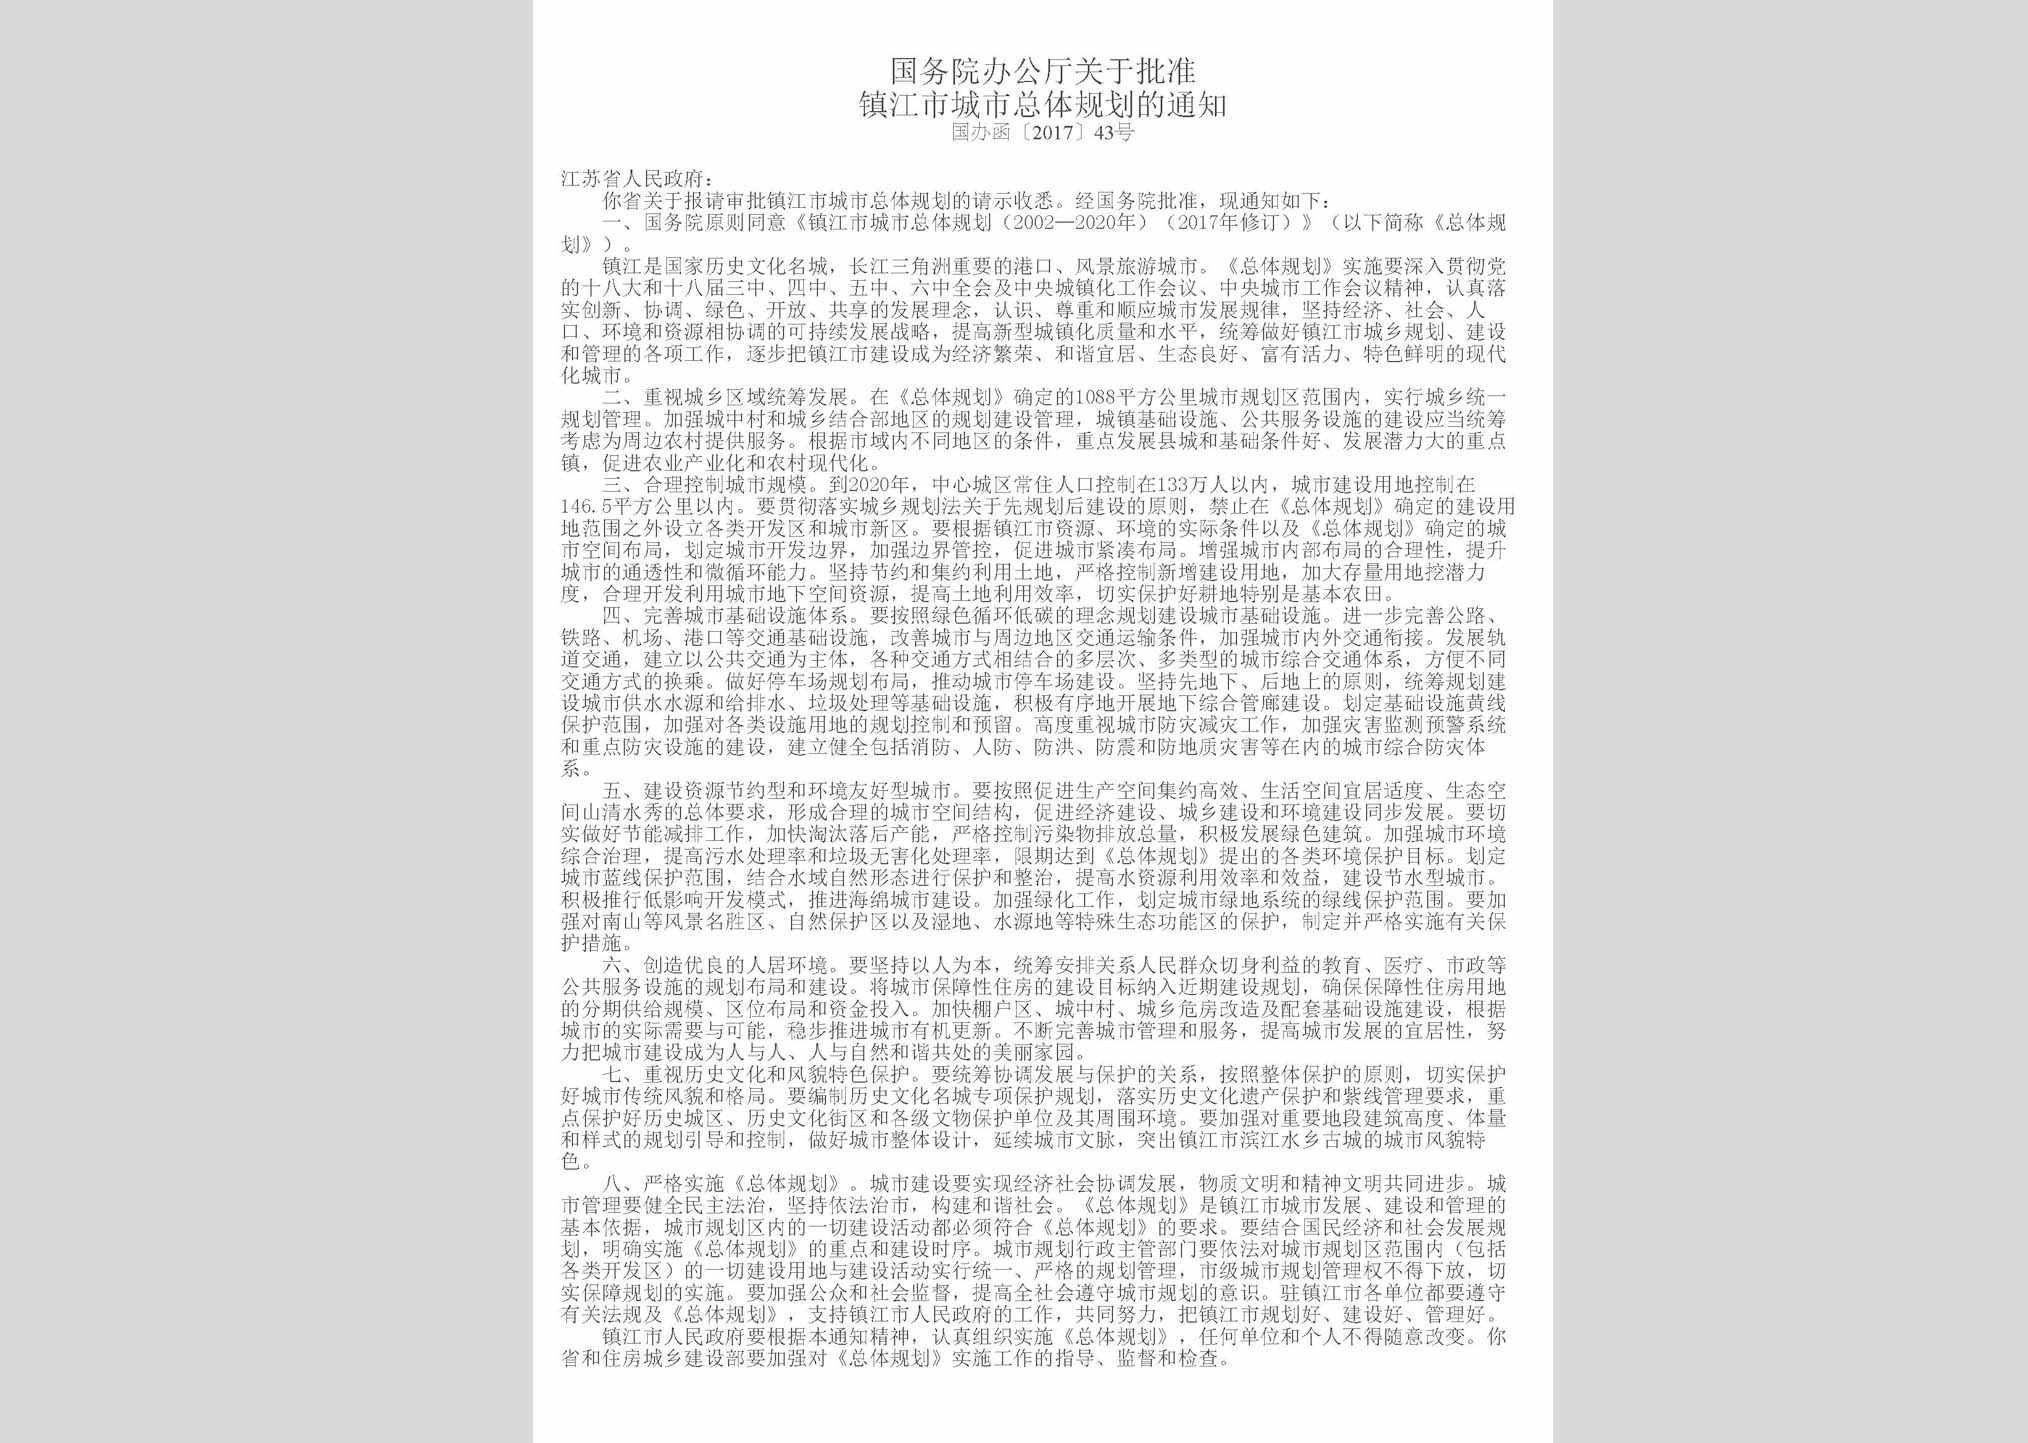 国办函[2017]43号：国务院办公厅关于批准镇江市城市总体规划的通知